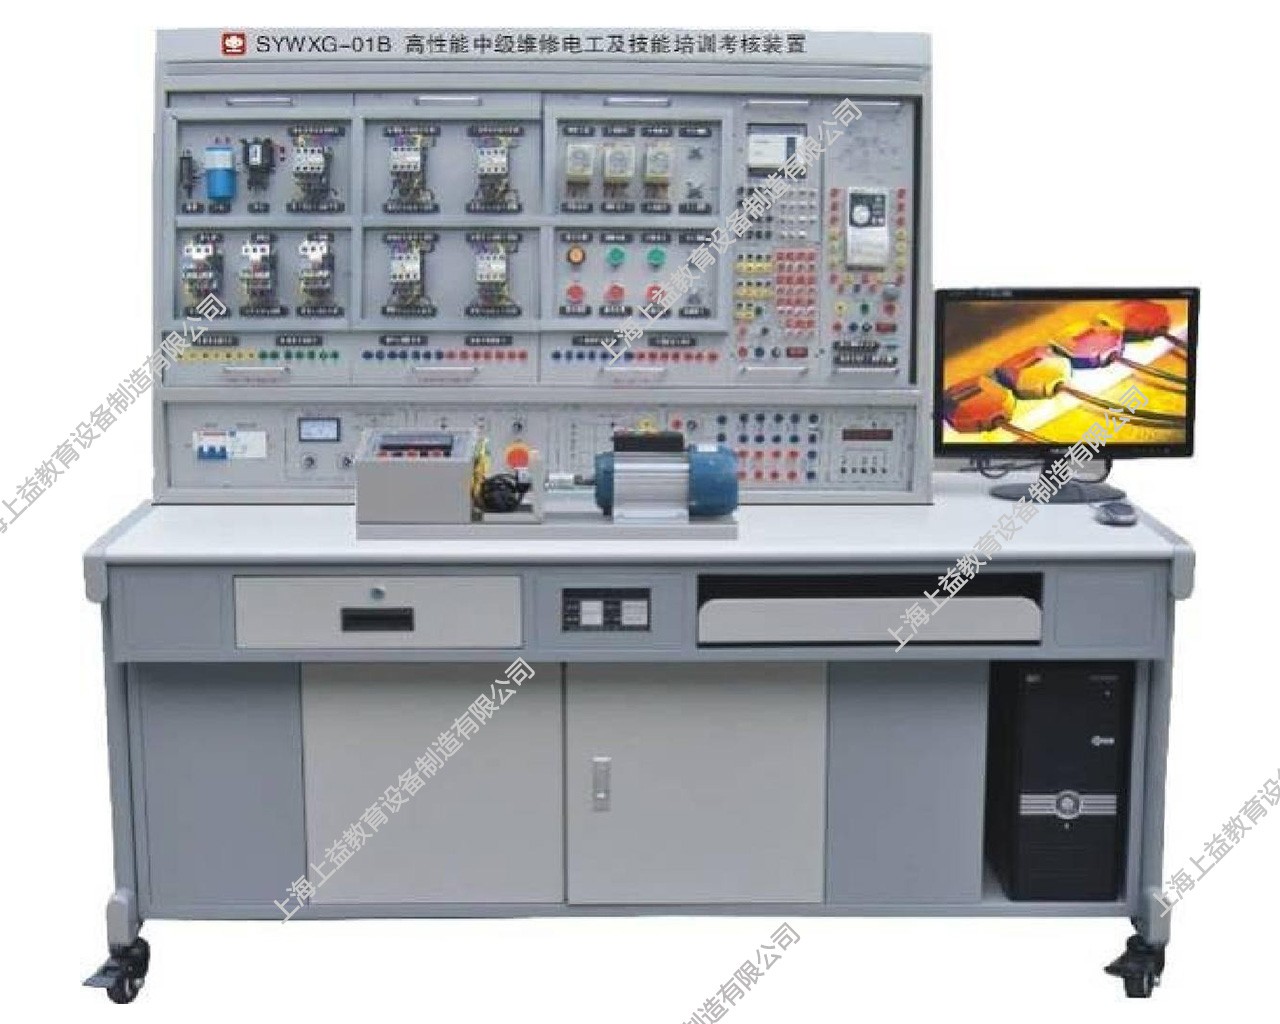 SYWXG-01B高性能中級維修電工及技能培訓考核裝置